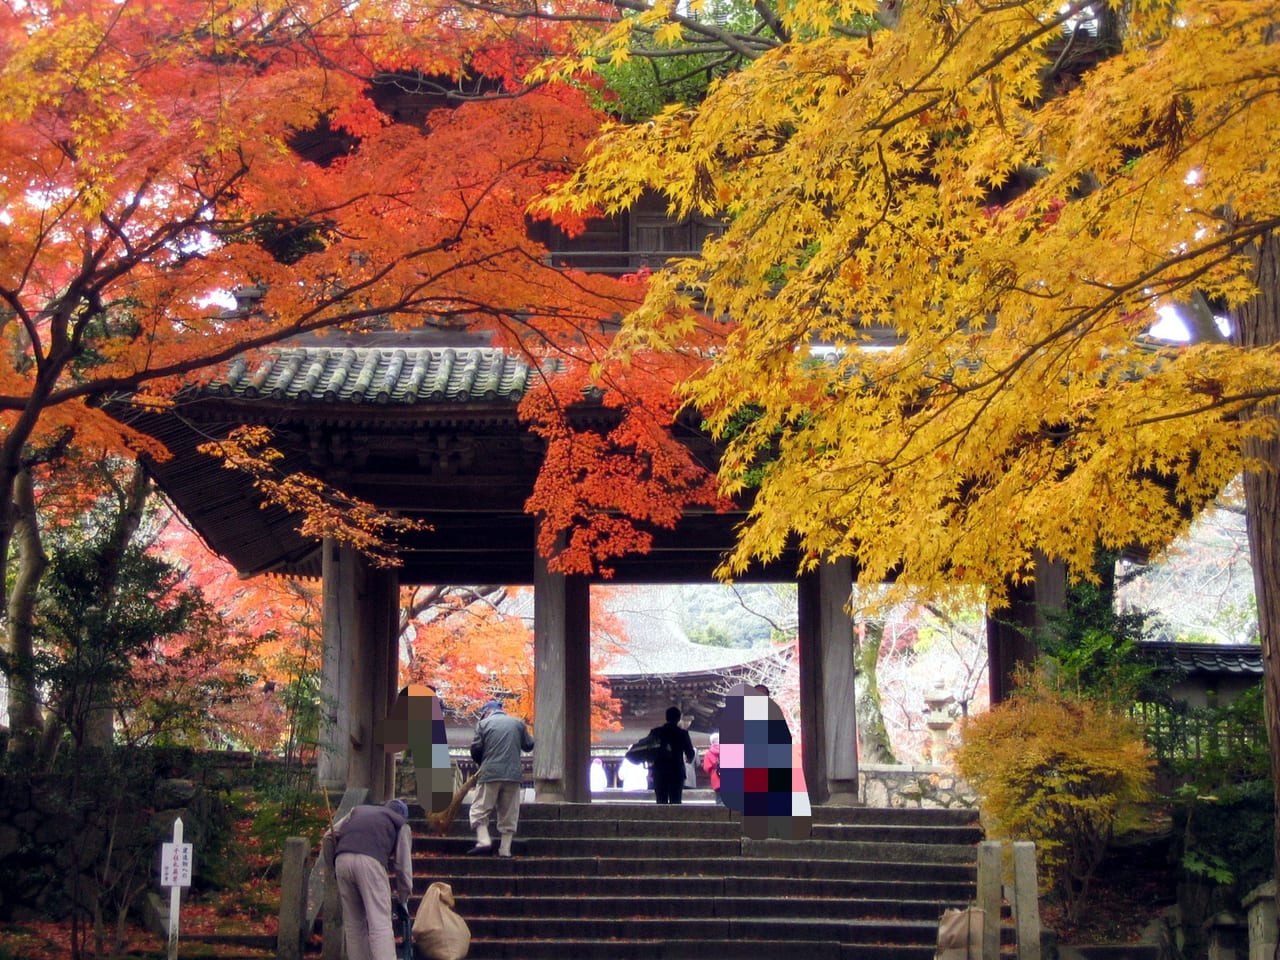 下関市 功山寺の紅葉は 11月中旬から12月上旬が見頃です 号外net 下関市